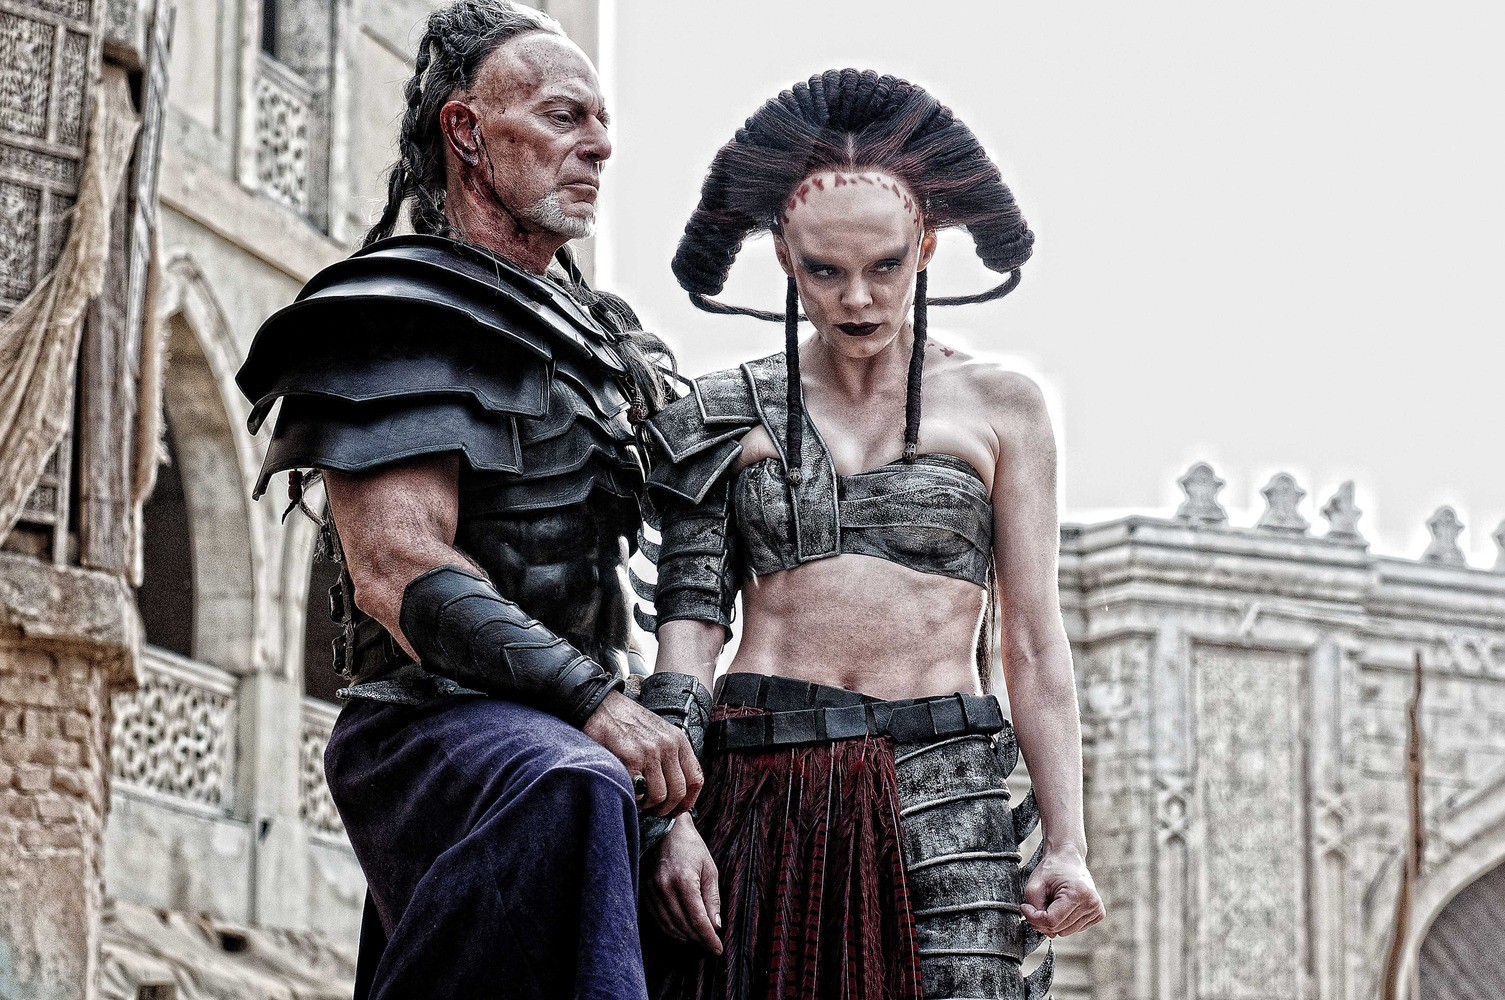 Rose McGowan in Conan the Barbarian